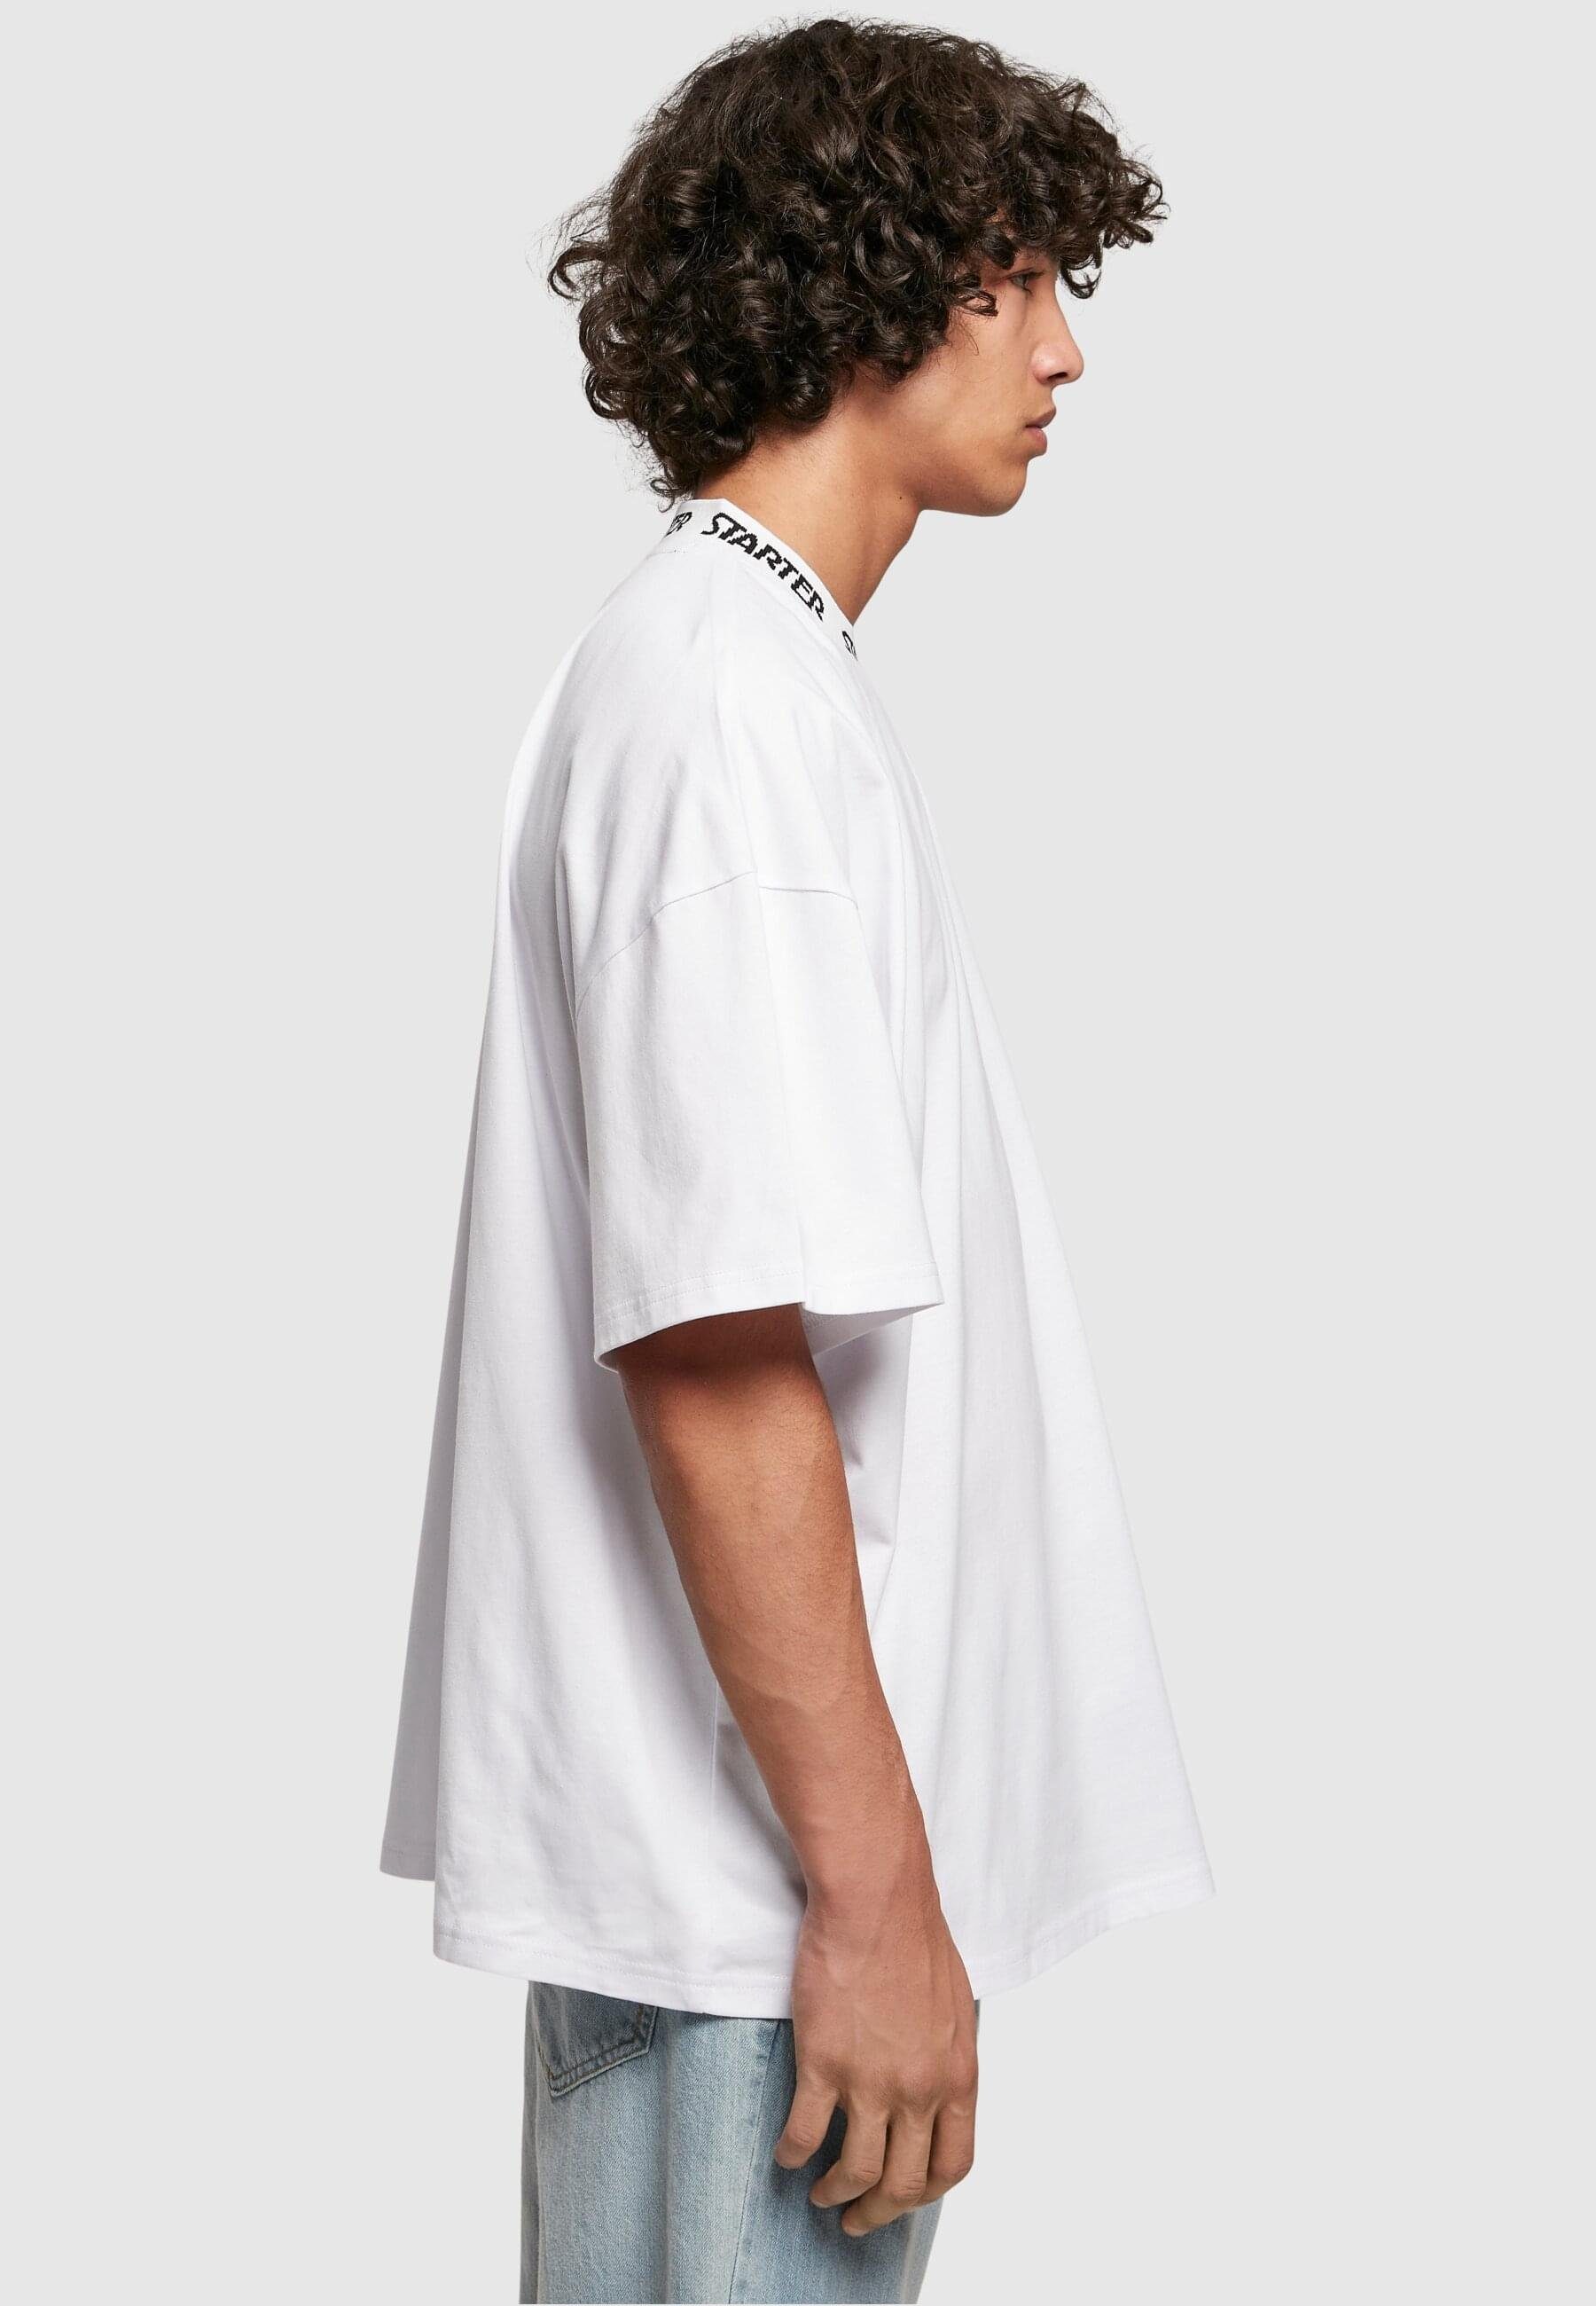 Starter (1-tlg) white Tee Rib Herren Starter T-Shirt Jaquard